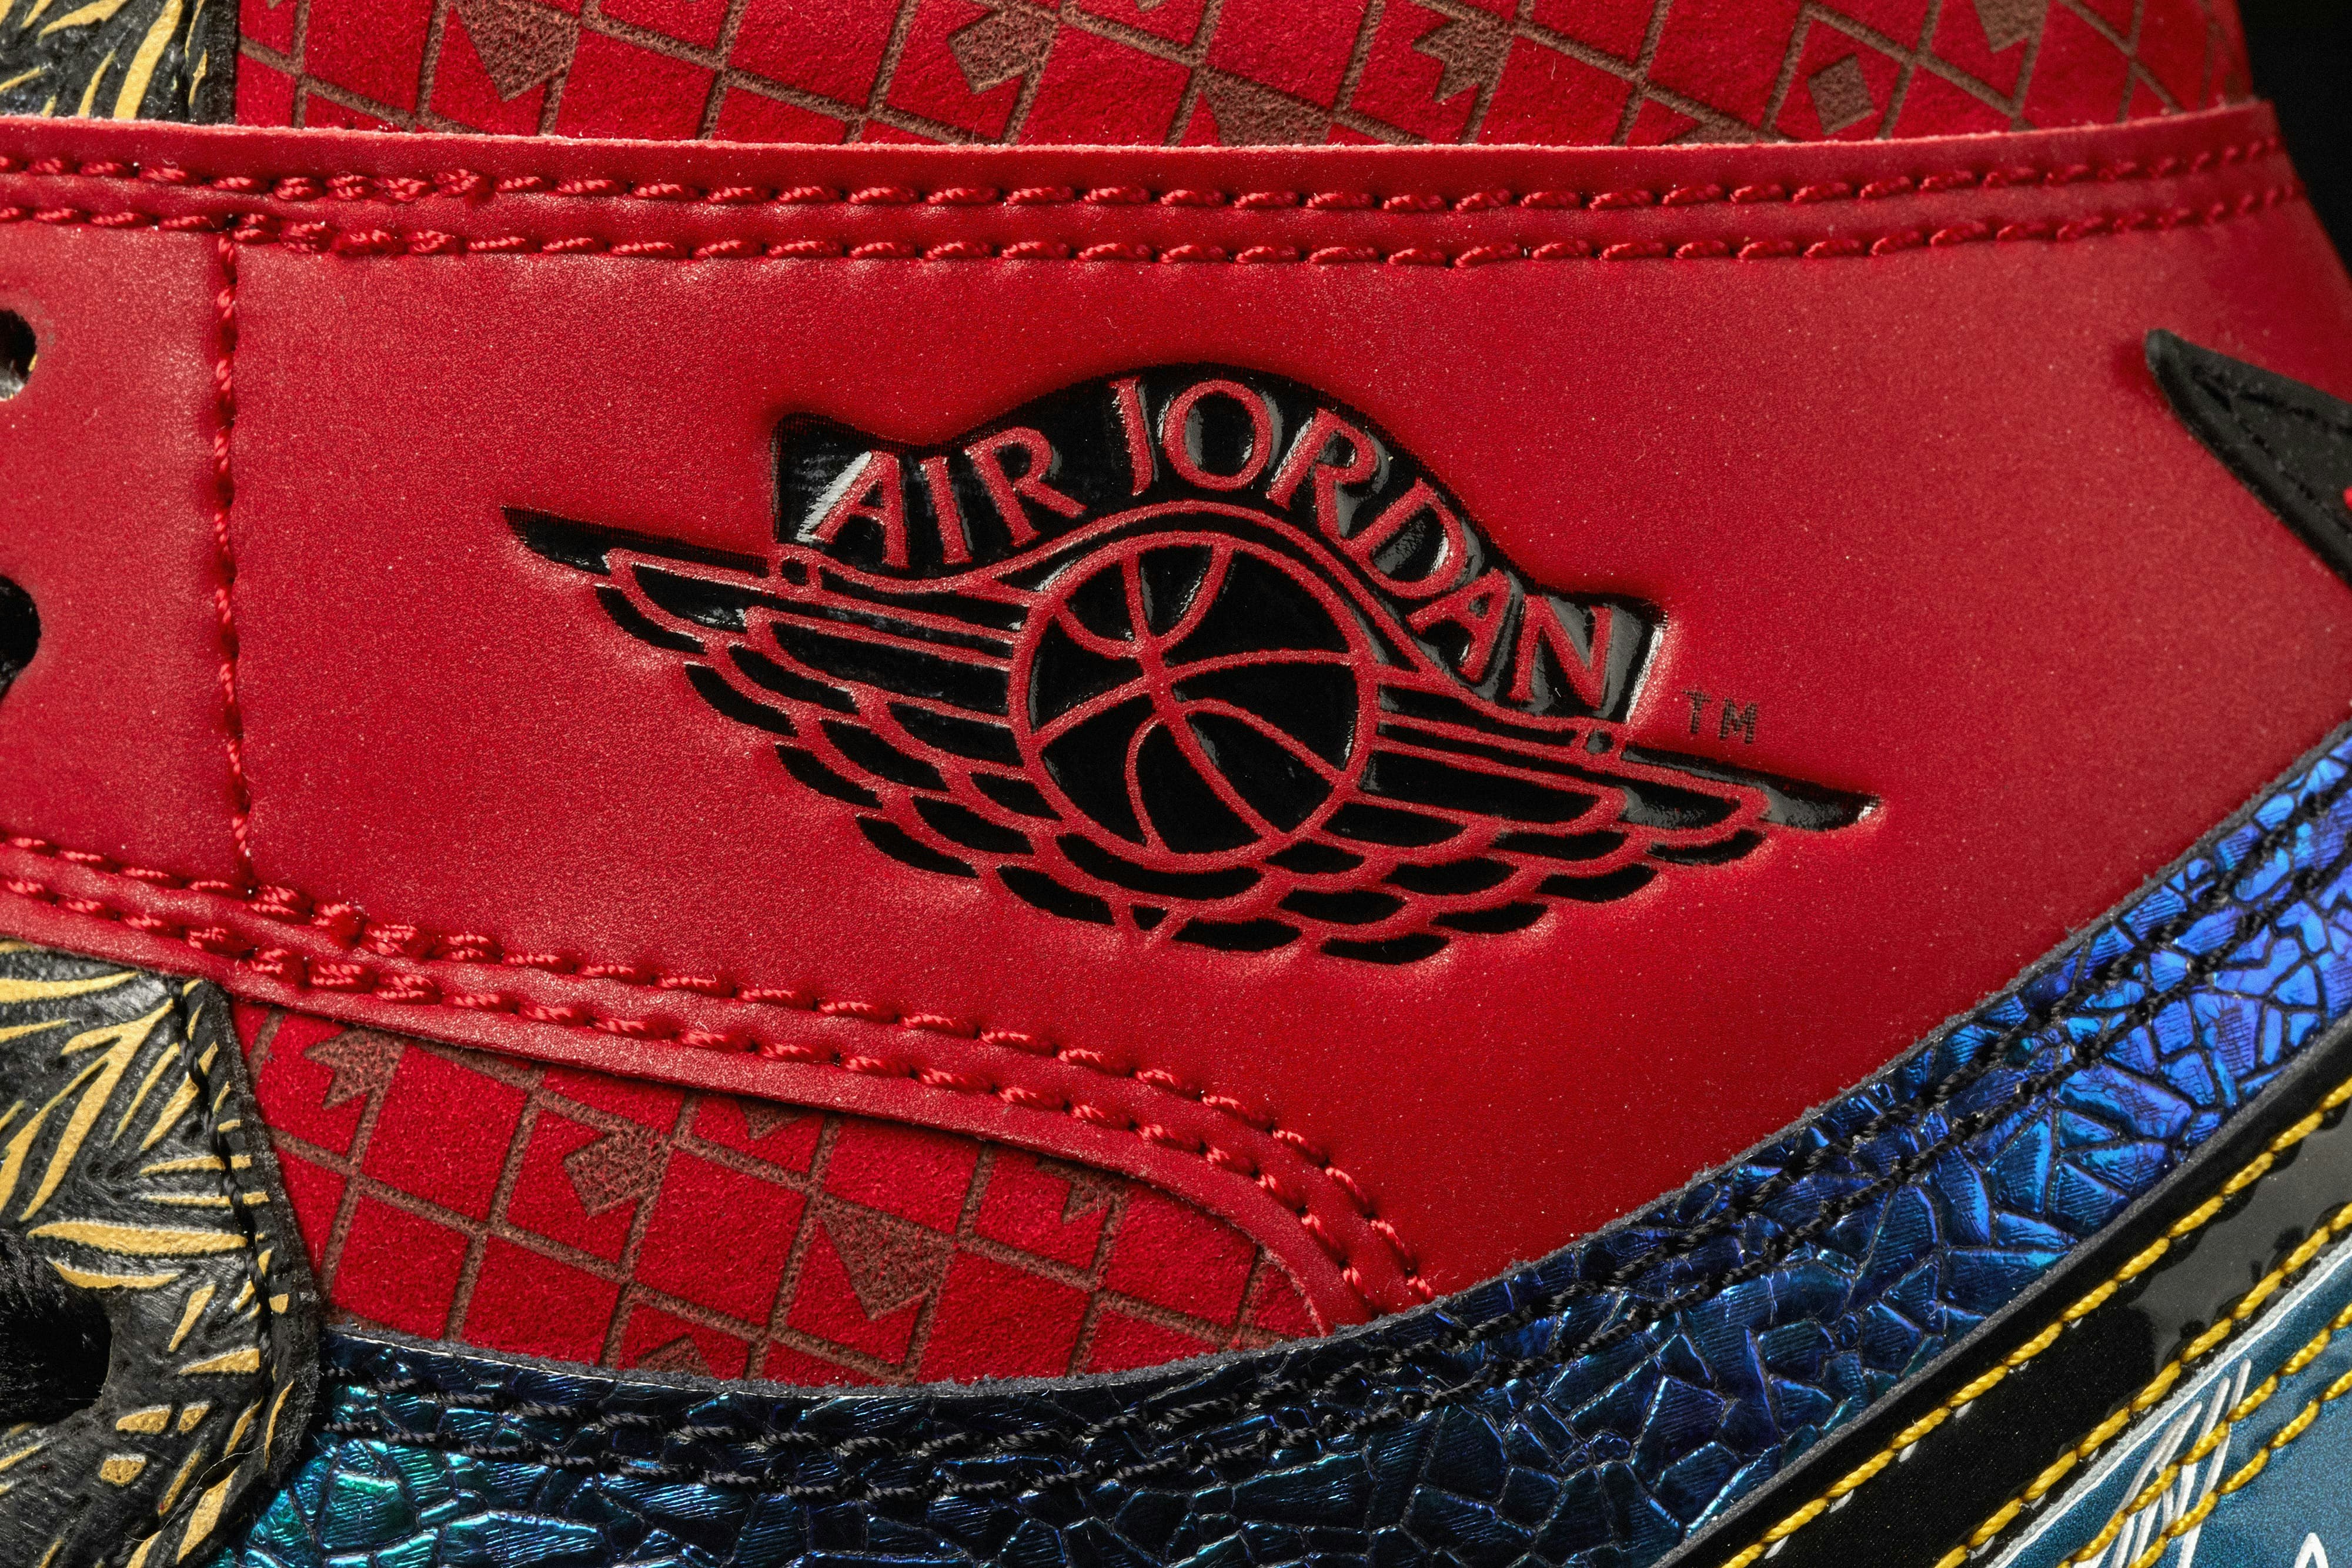 Air Jordan 1 High “What The” Doernbecher